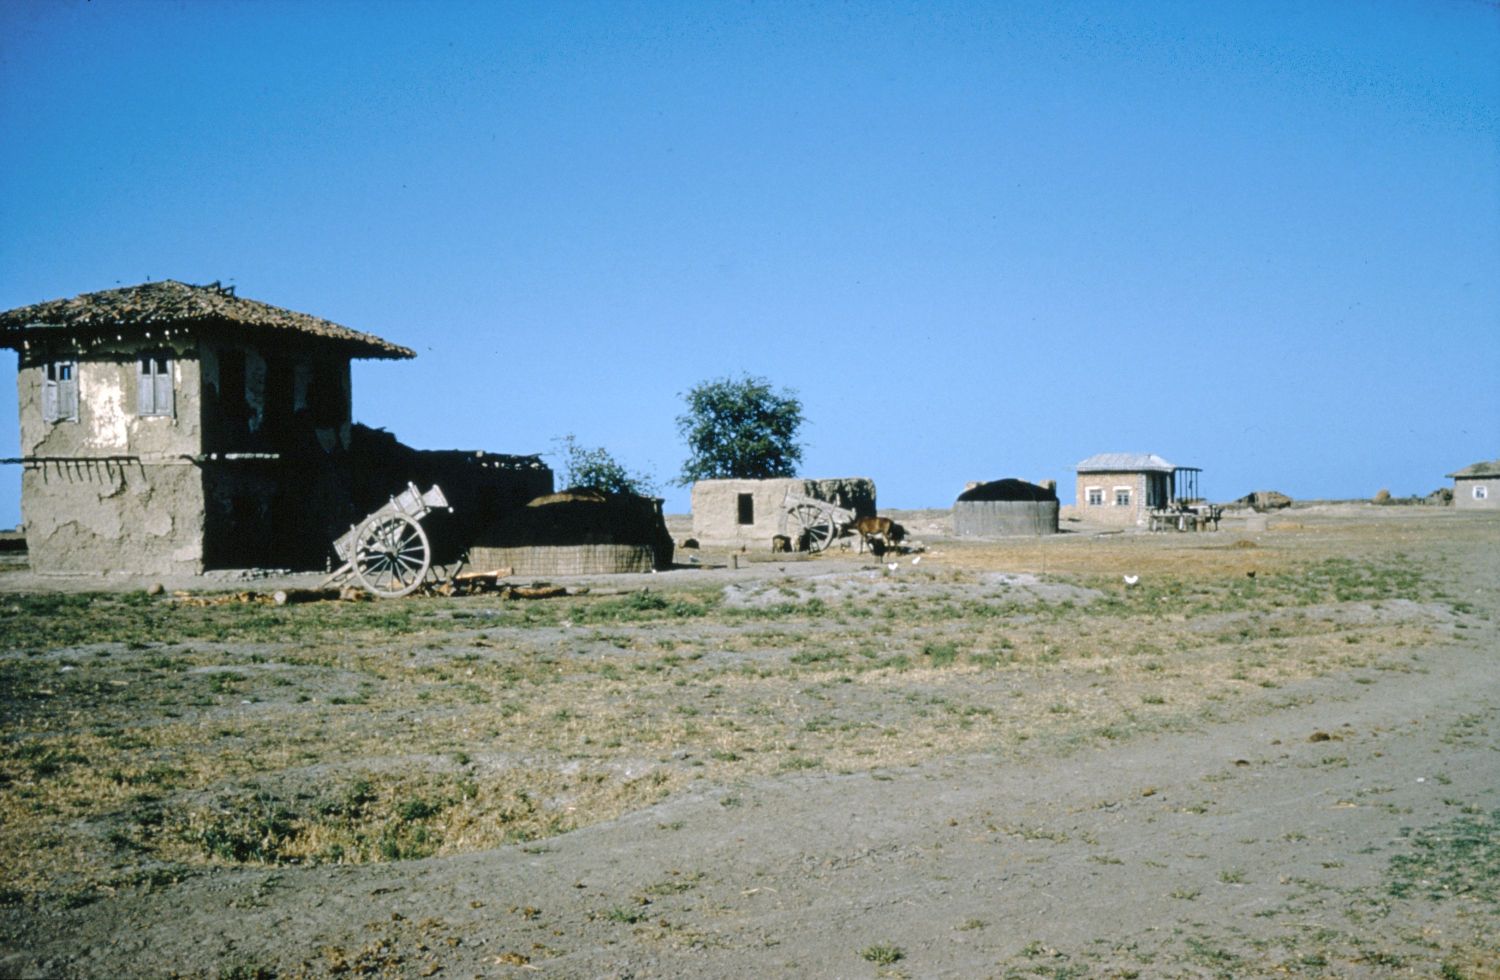 View of Turkoman tents near Gunbad-i Kavus (Gurgan), Iran.